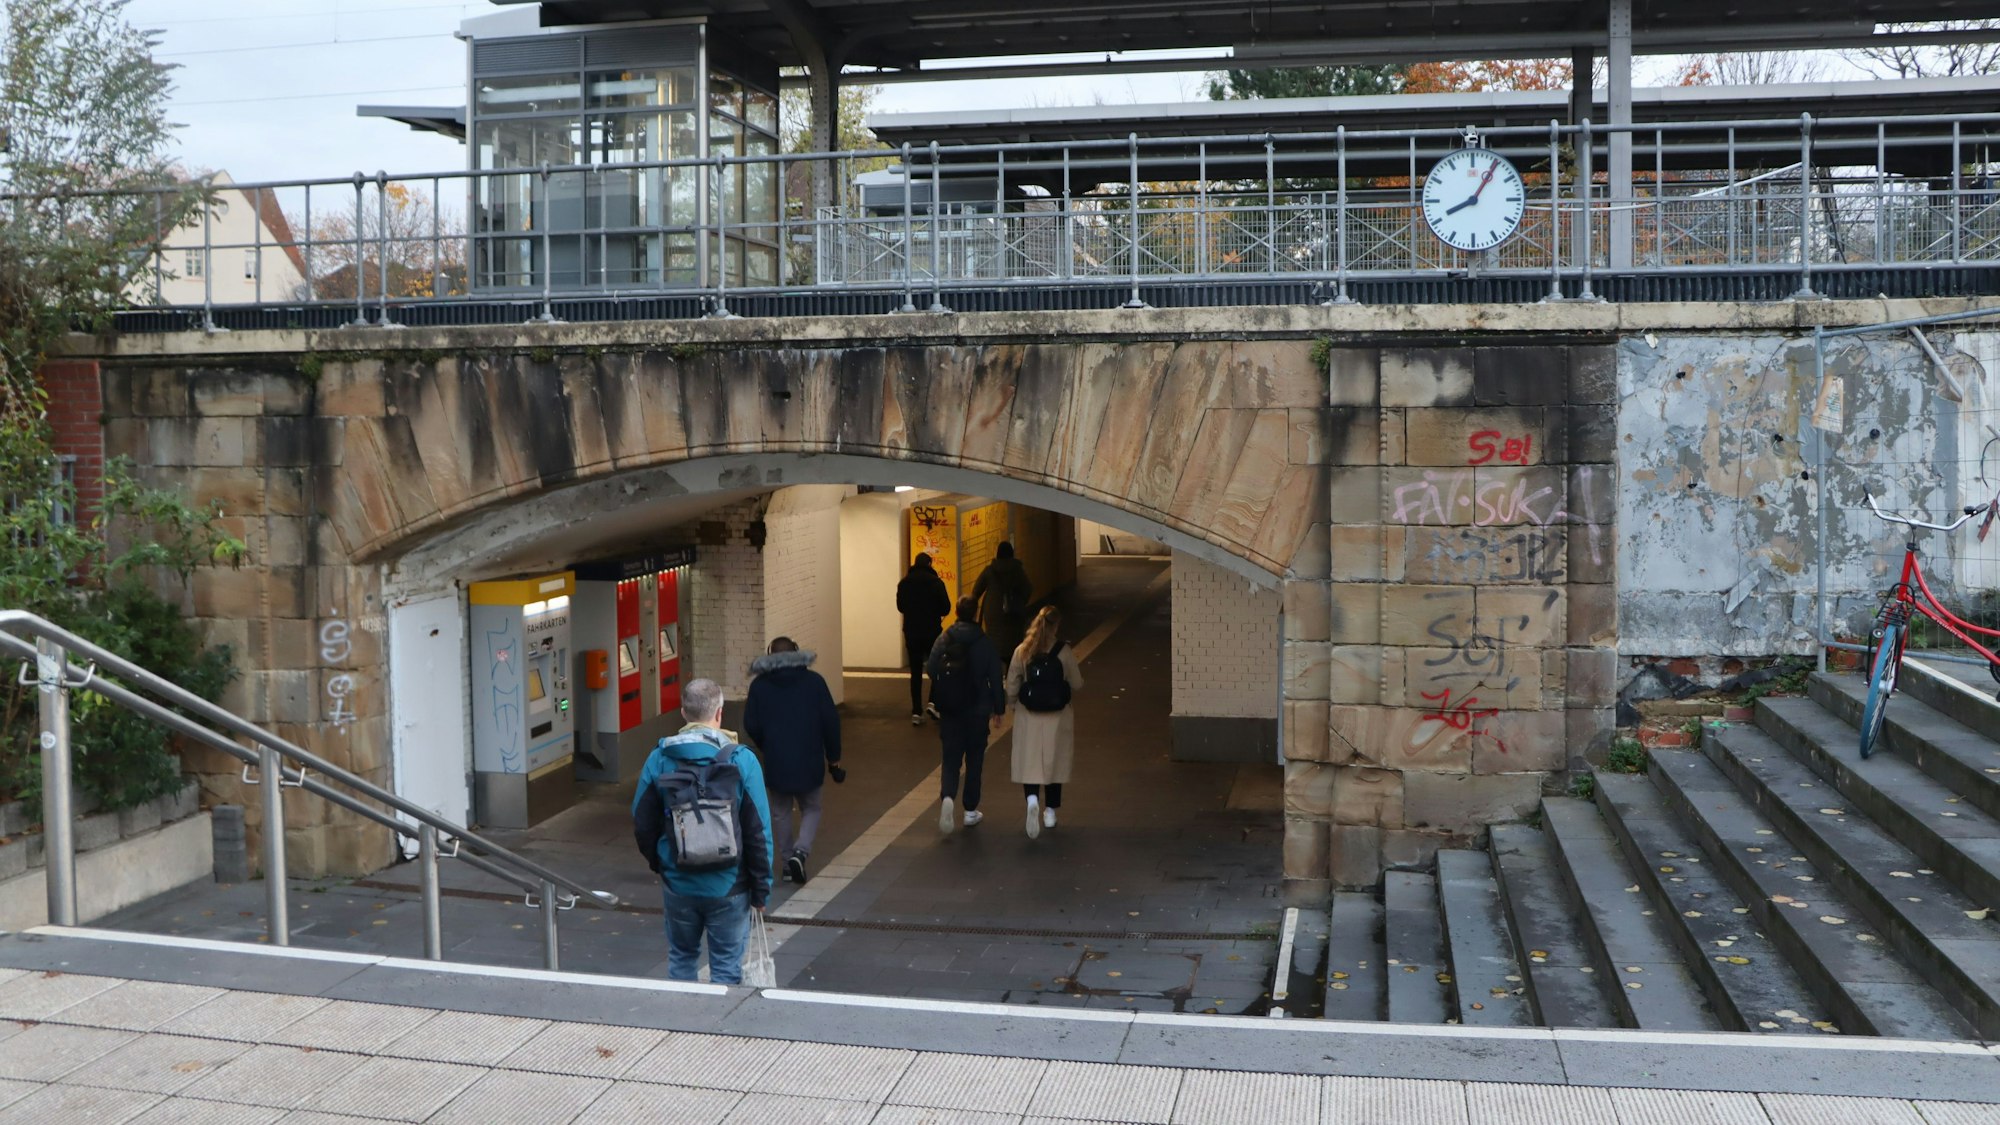 Das Bild zeigt die Unterführung des Bahnhofs in Brühl.